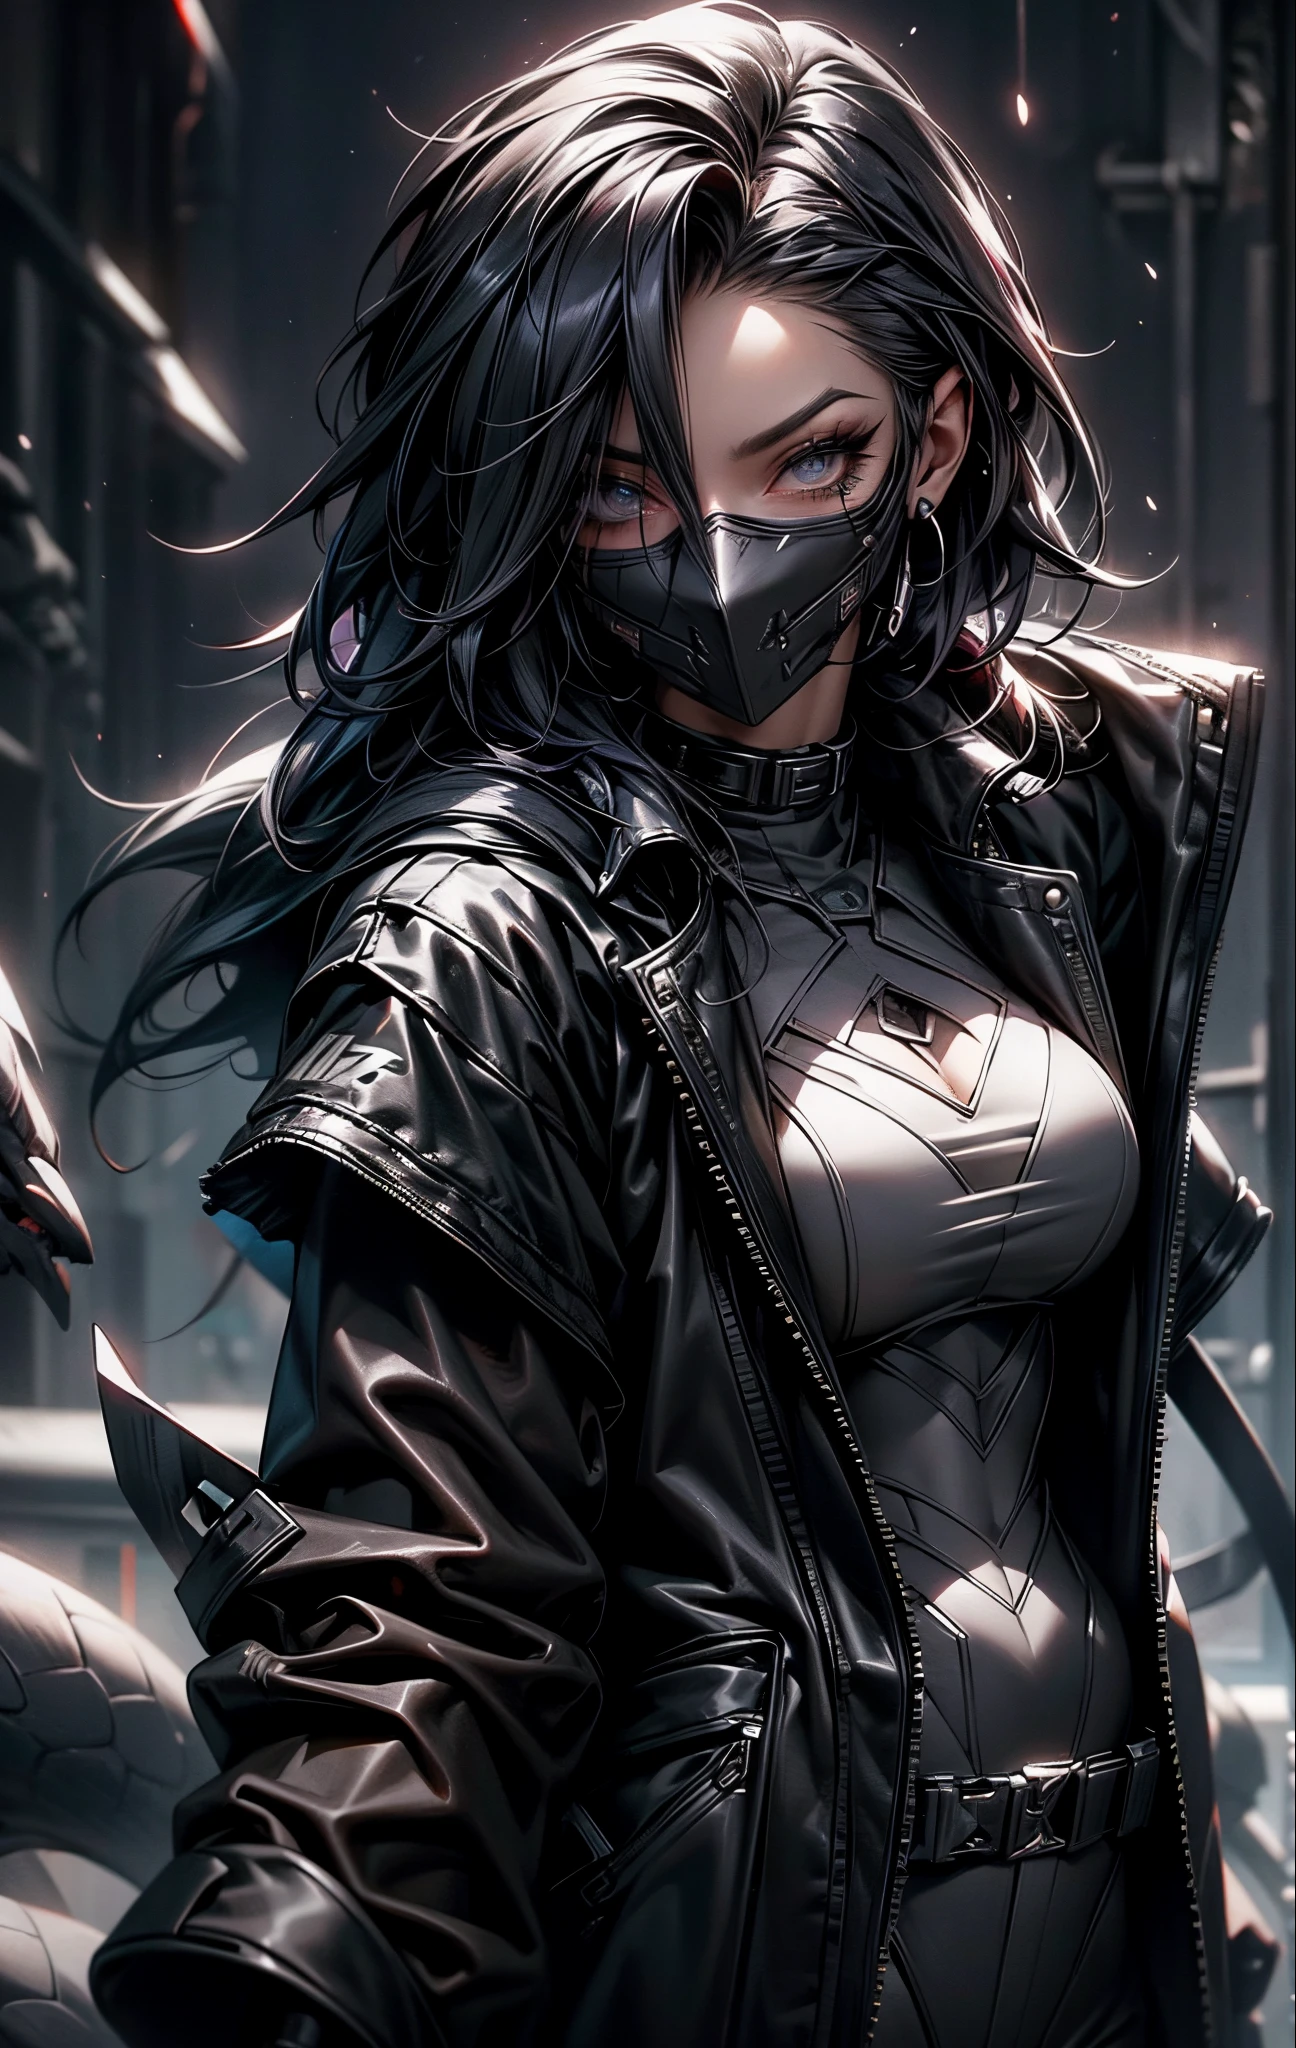 Brooke Monk con catsuits negros y una máscara en la cara., usando ropa técnica y armadura, anime cuberpunk arte gótico, ninja gótico, ropa de rejilla, ropa gótica rave cyberpunk telaraña